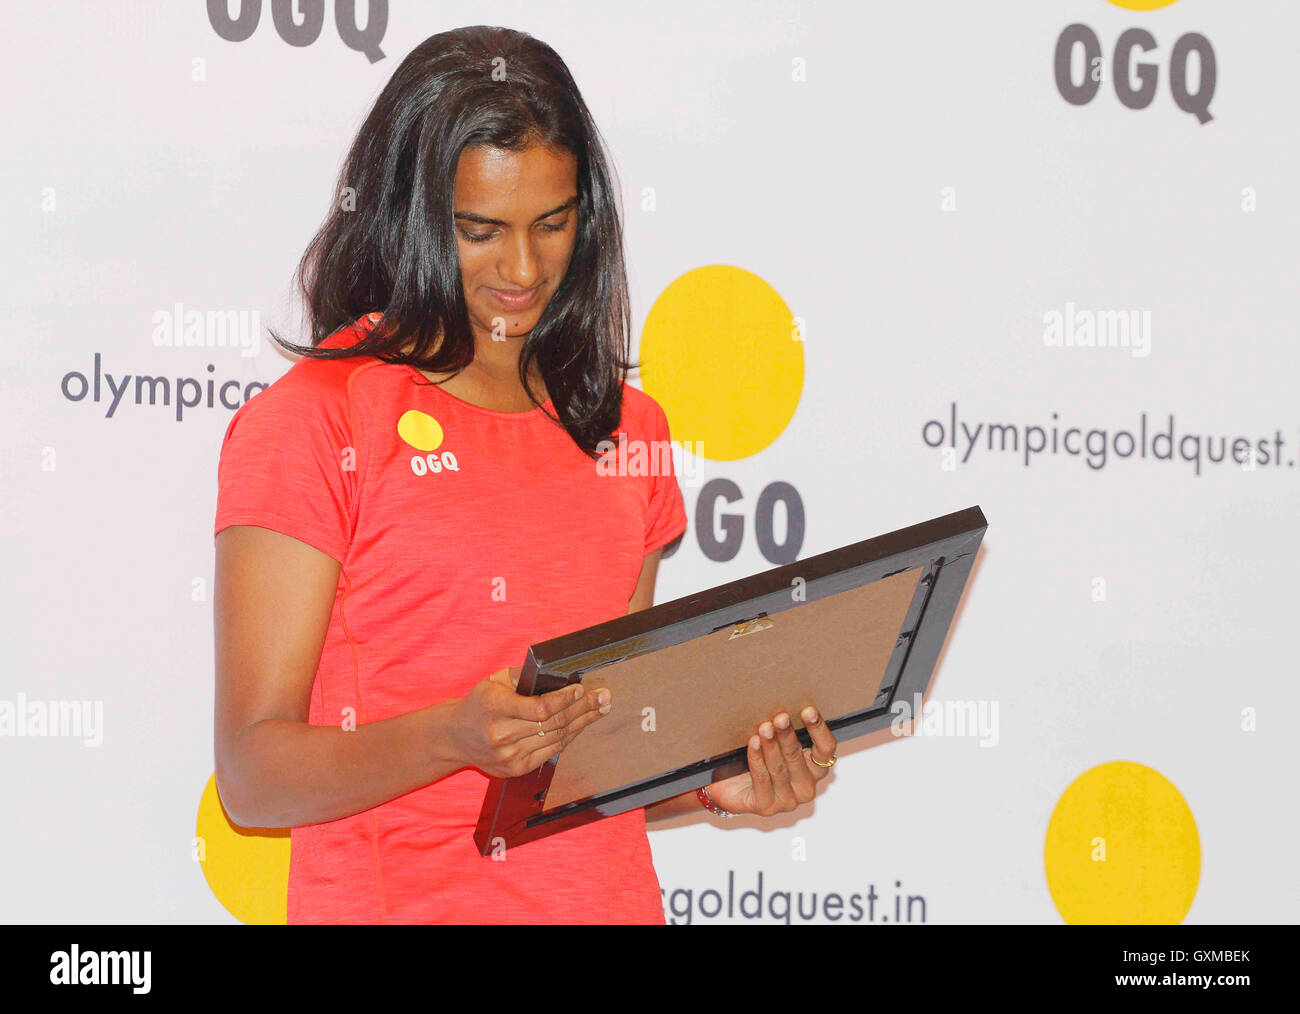 Indische Badmintonspielerin Rio Olympia-Silbermedaillengewinner P V Sindhu Glückwünsche Funktion organisiert OGQ Mumbai Stockfoto